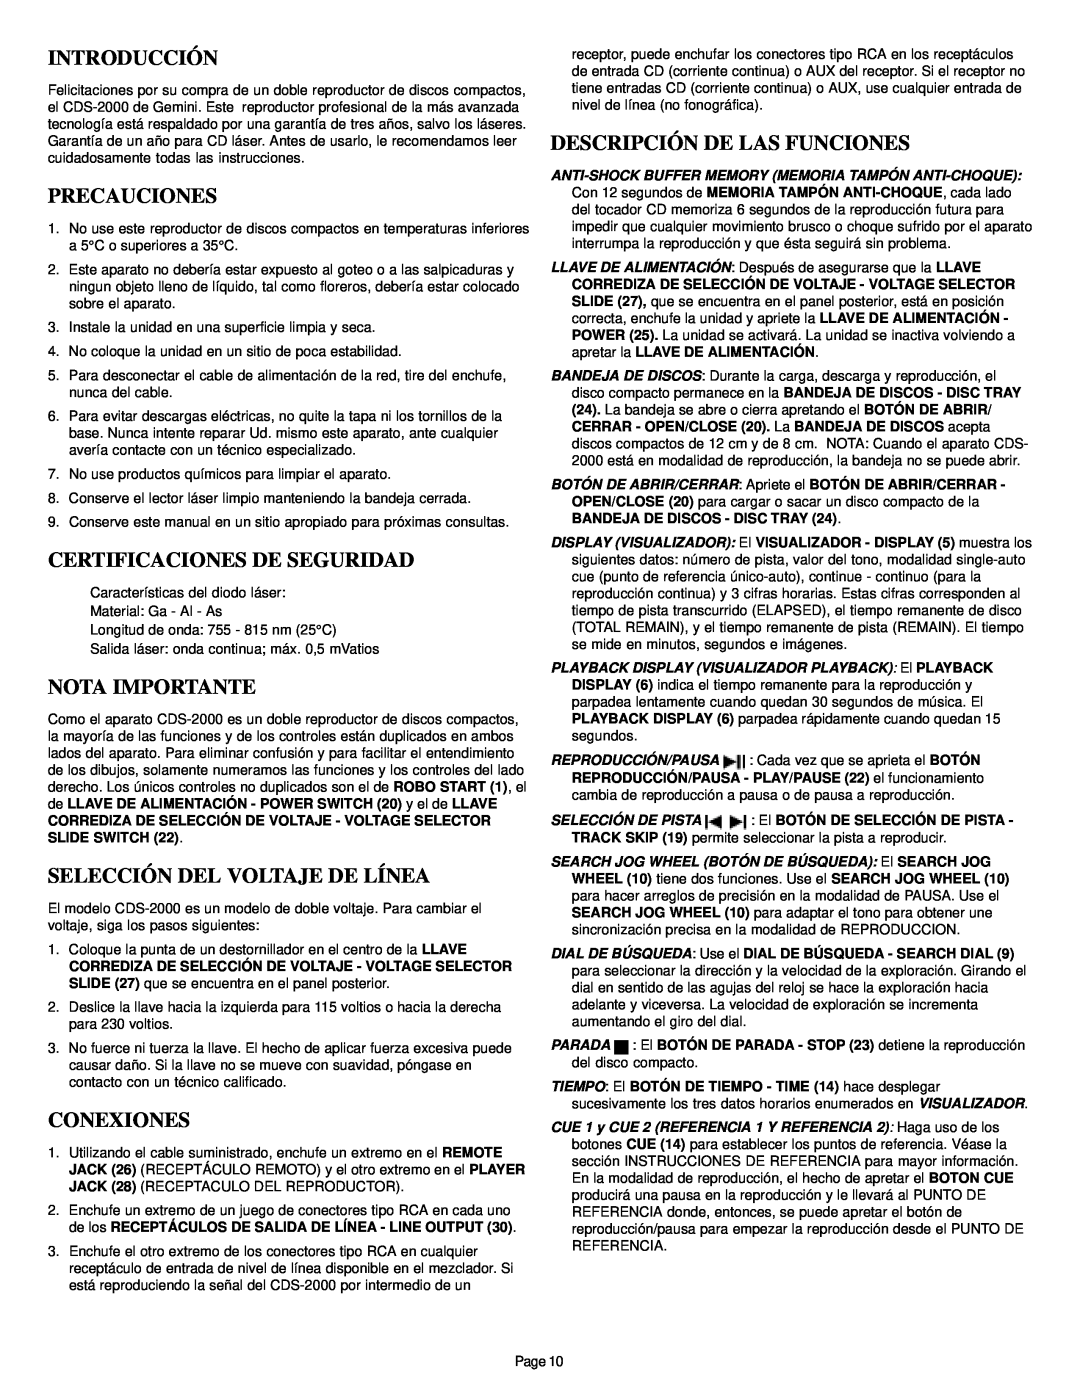 Gemini CDS-2000 Introducción, Precauciones, Certificaciones De Seguridad, Nota Importante, Selección Del Voltaje De Línea 